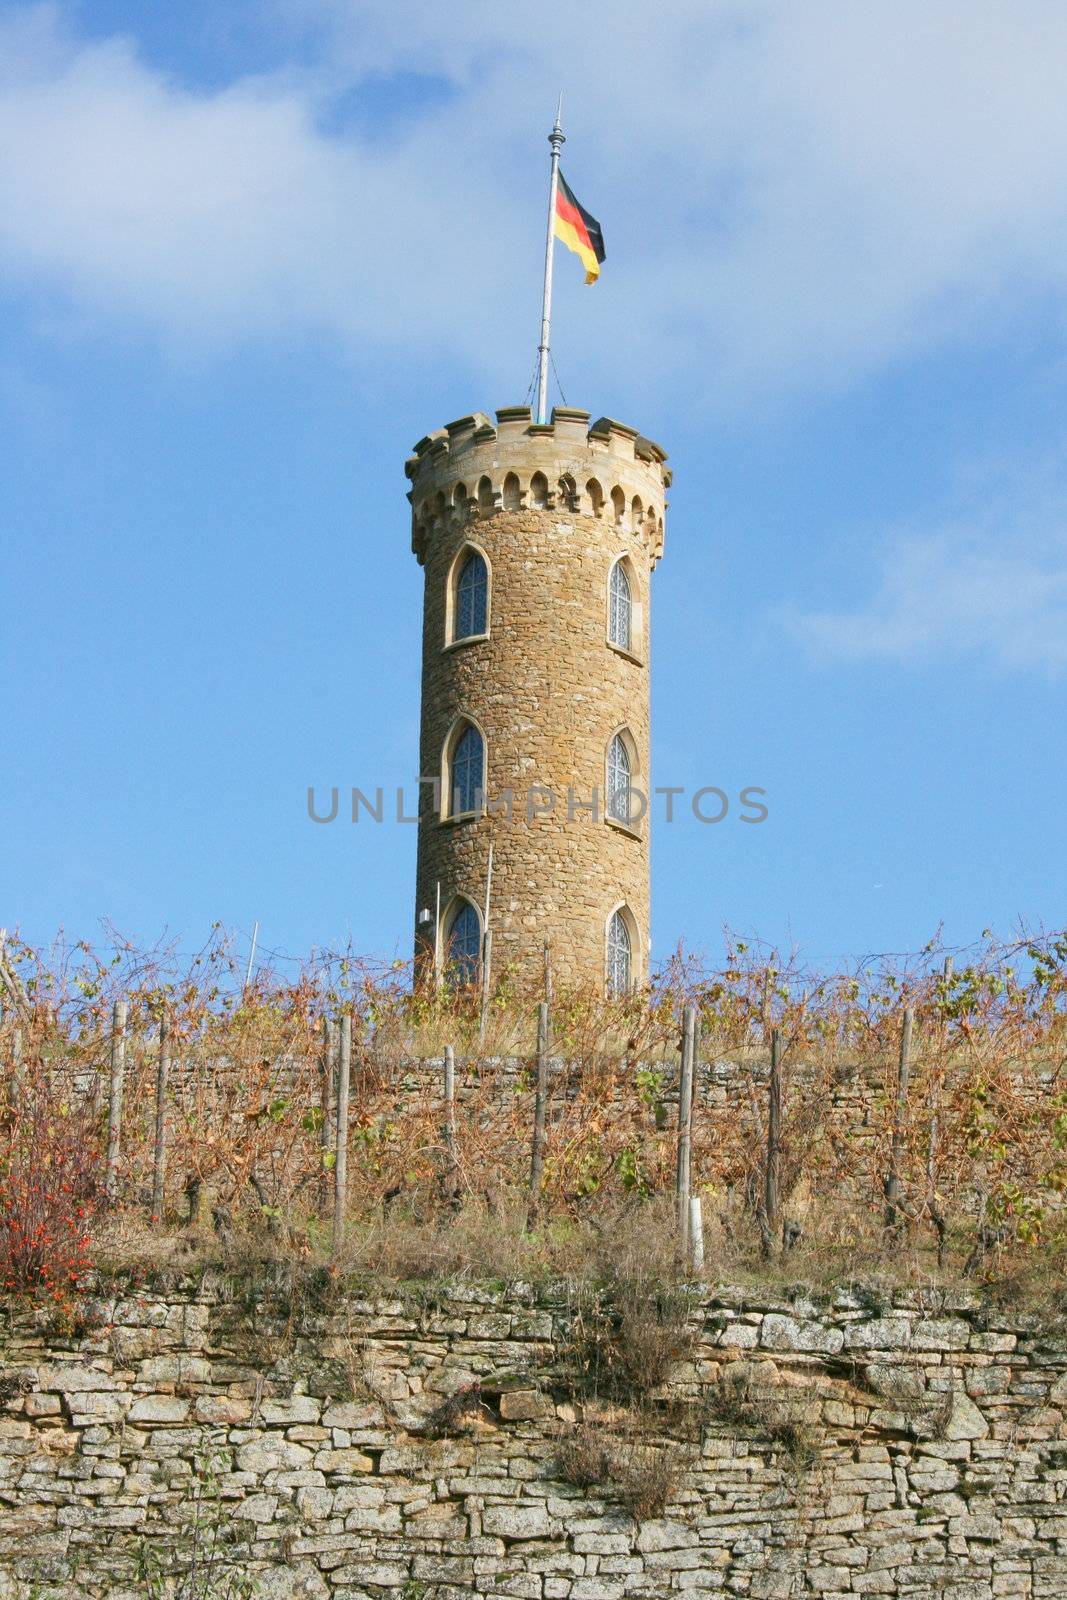 Turm im Weinberg mit Deutscher Flagge,und blauem himmel im Hintergrund	
Tower in the vineyard with the German flag and a blue sky in the background